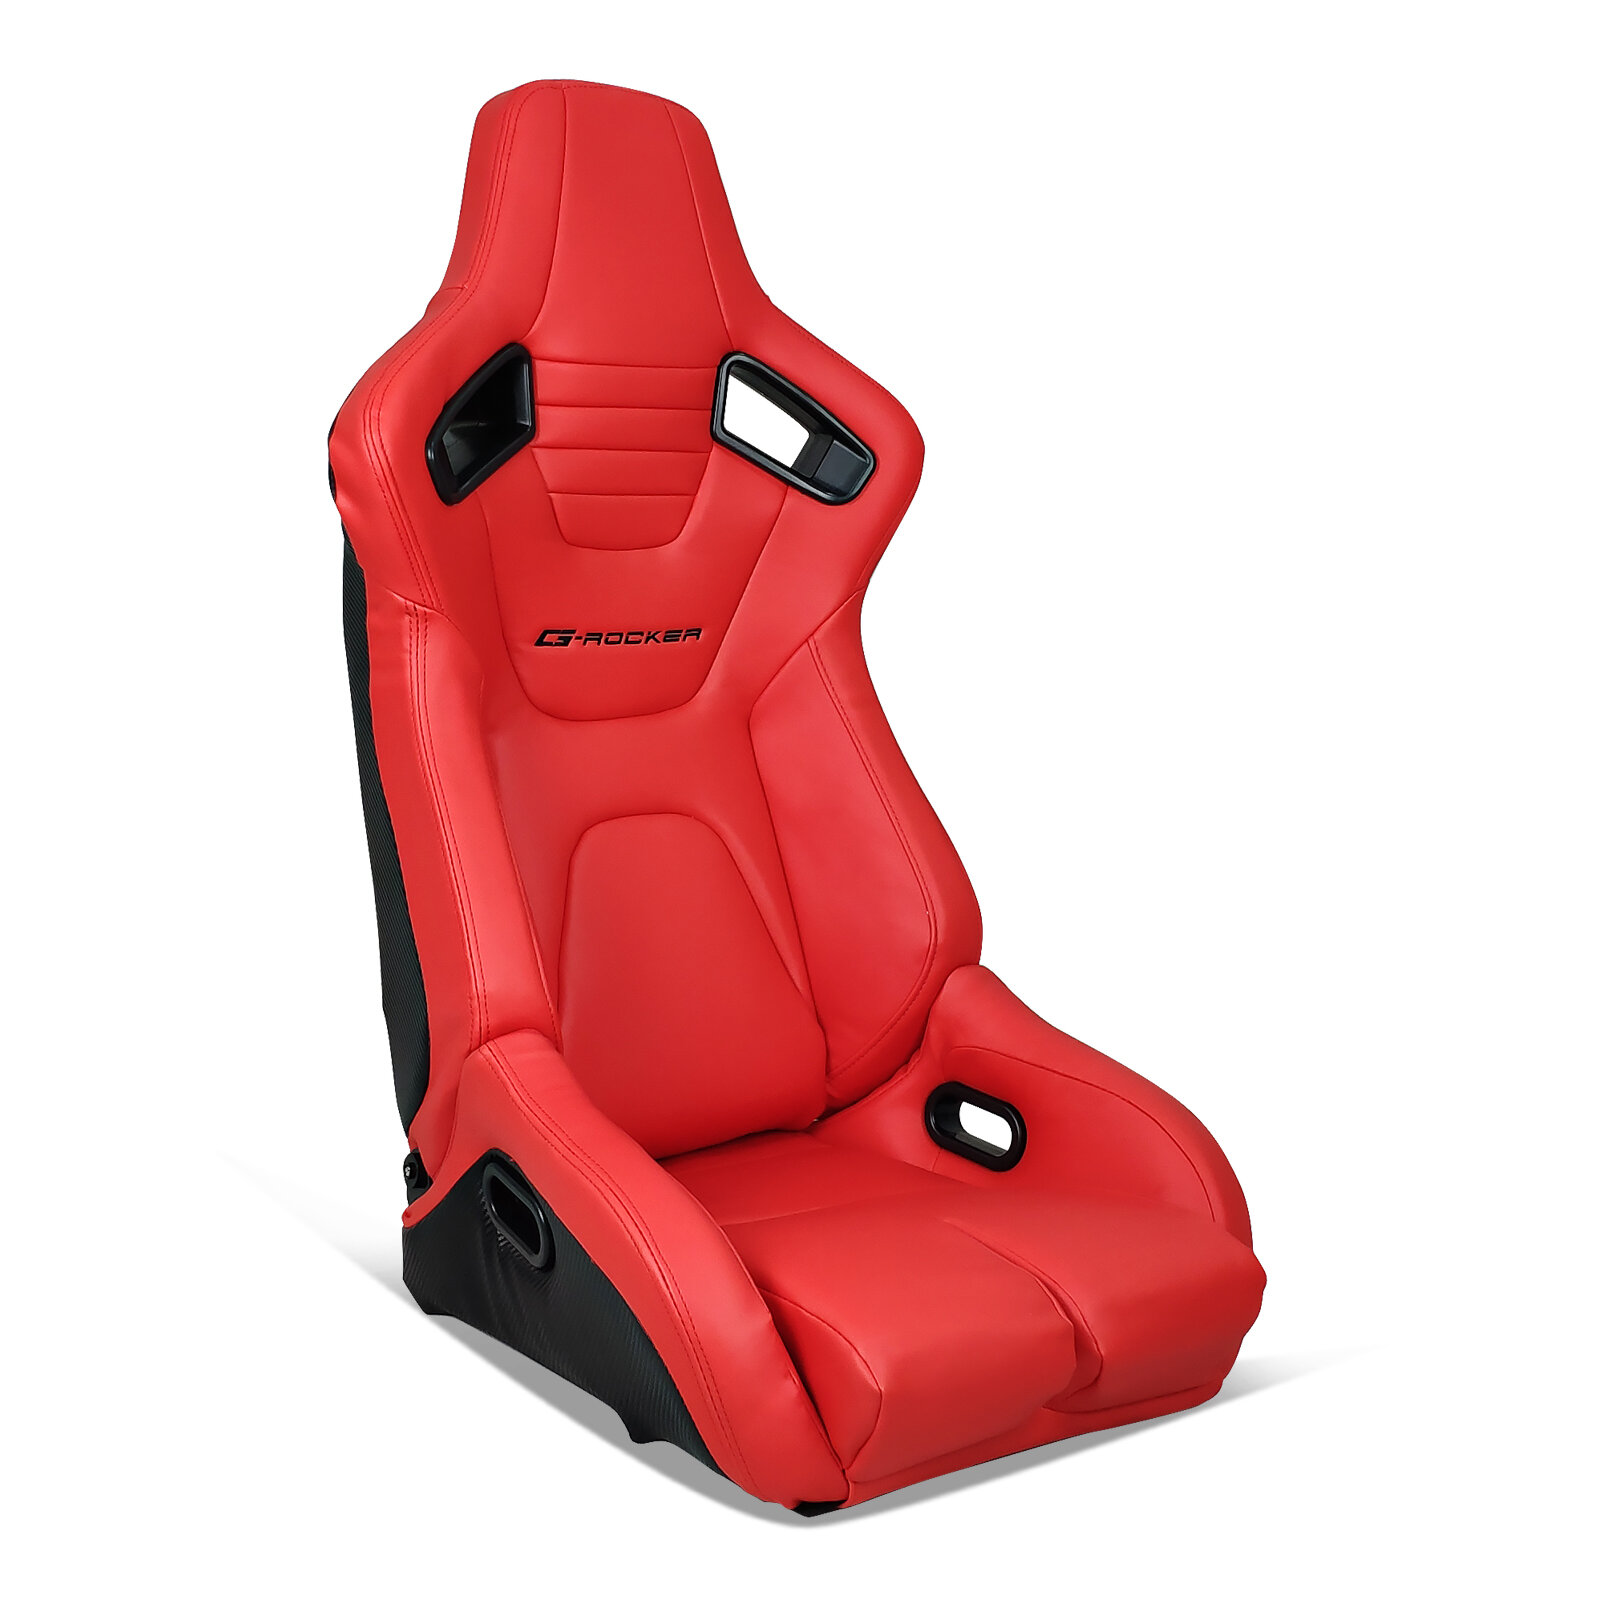 https://assets.wfcdn.com/im/11588109/compr-r85/1672/167242177/inbox-zero-reclining-ergonomic-pc-racing-game-chair.jpg